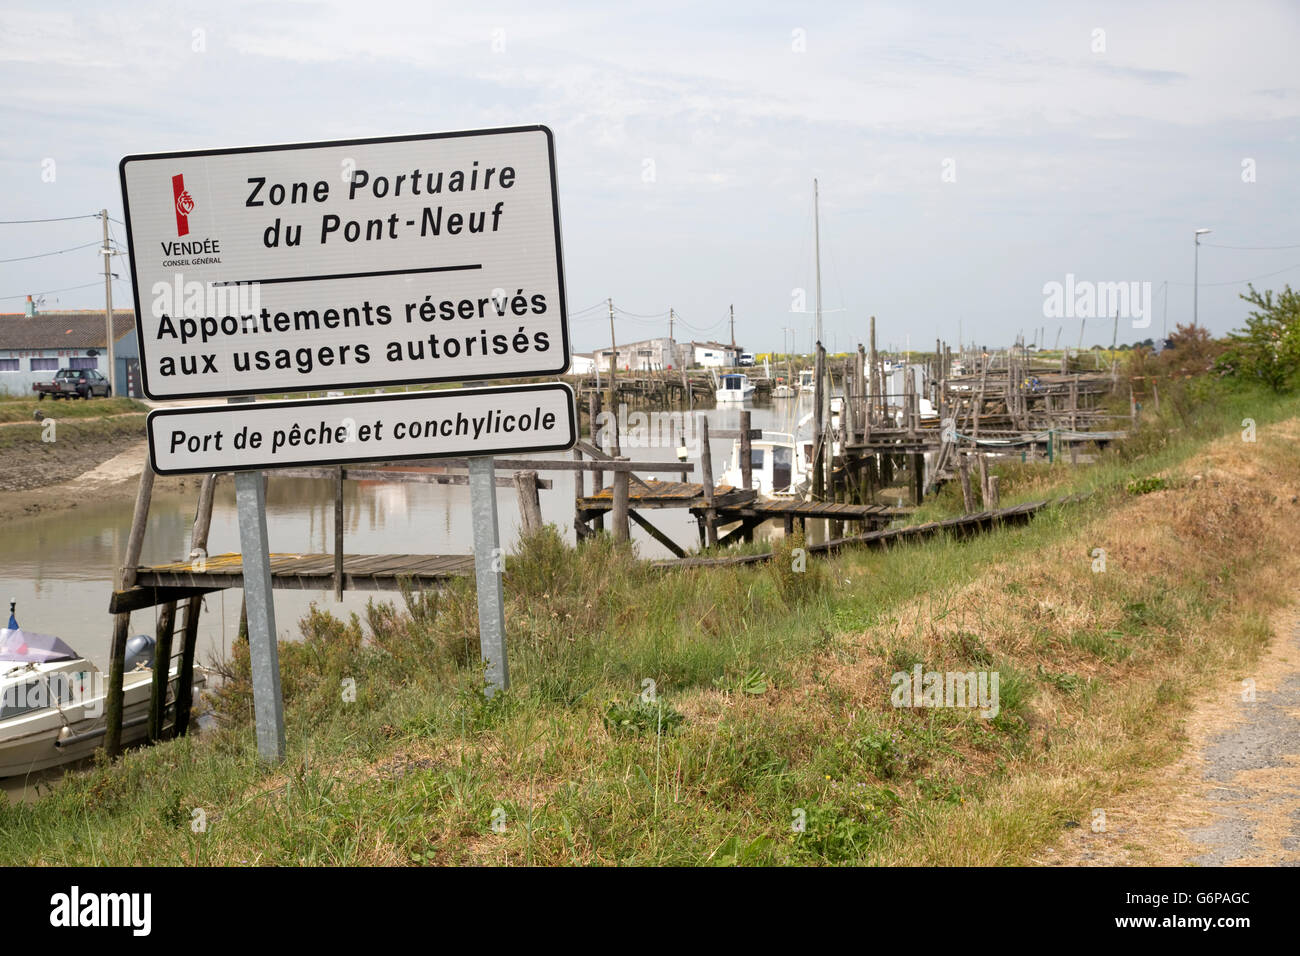 Cartello indicante pesca di estuario Zone Portuaire Pont-Neuf Vendee Bouin Francia Foto Stock